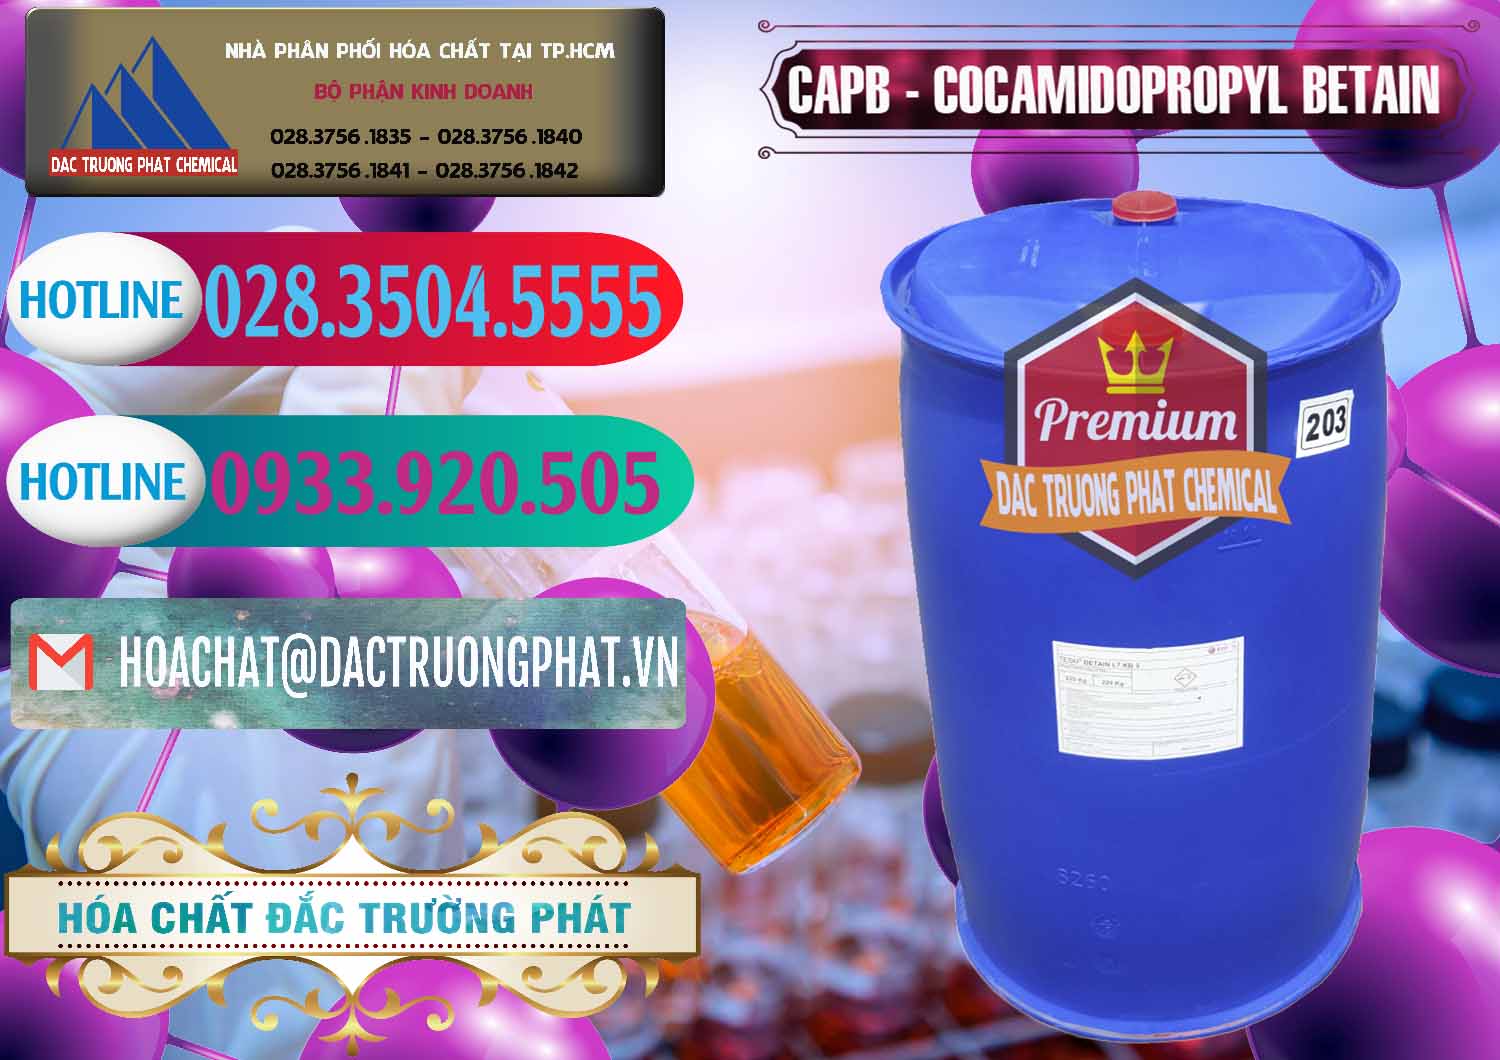 Nơi chuyên phân phối và bán Cocamidopropyl Betaine - CAPB Tego Indonesia - 0327 - Công ty chuyên phân phối - nhập khẩu hóa chất tại TP.HCM - truongphat.vn